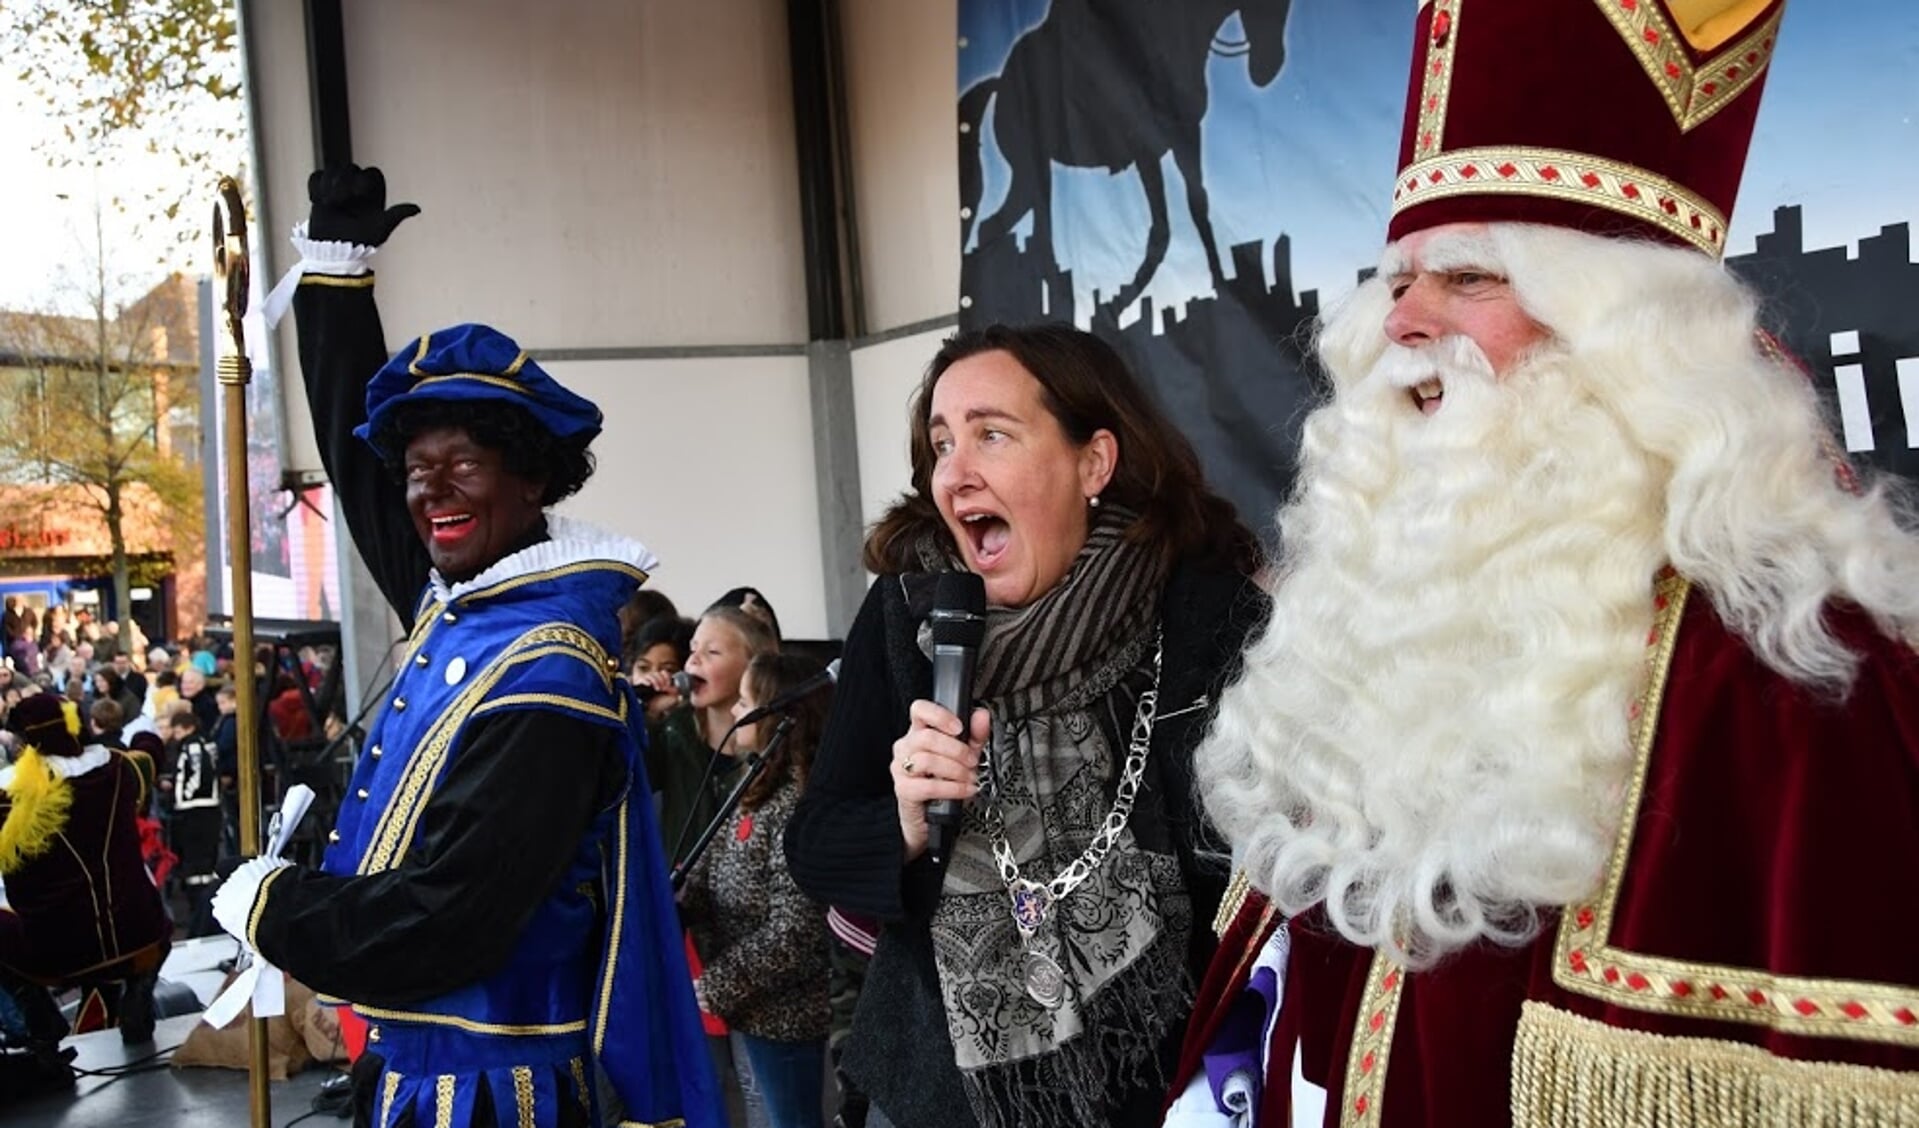 Burgemeester Baltus zingt enthousiast mee met het Heemskerks Sinterklaaslied. Piet zorgt voor een dansje terwijl de Sint aandachtig luistert.